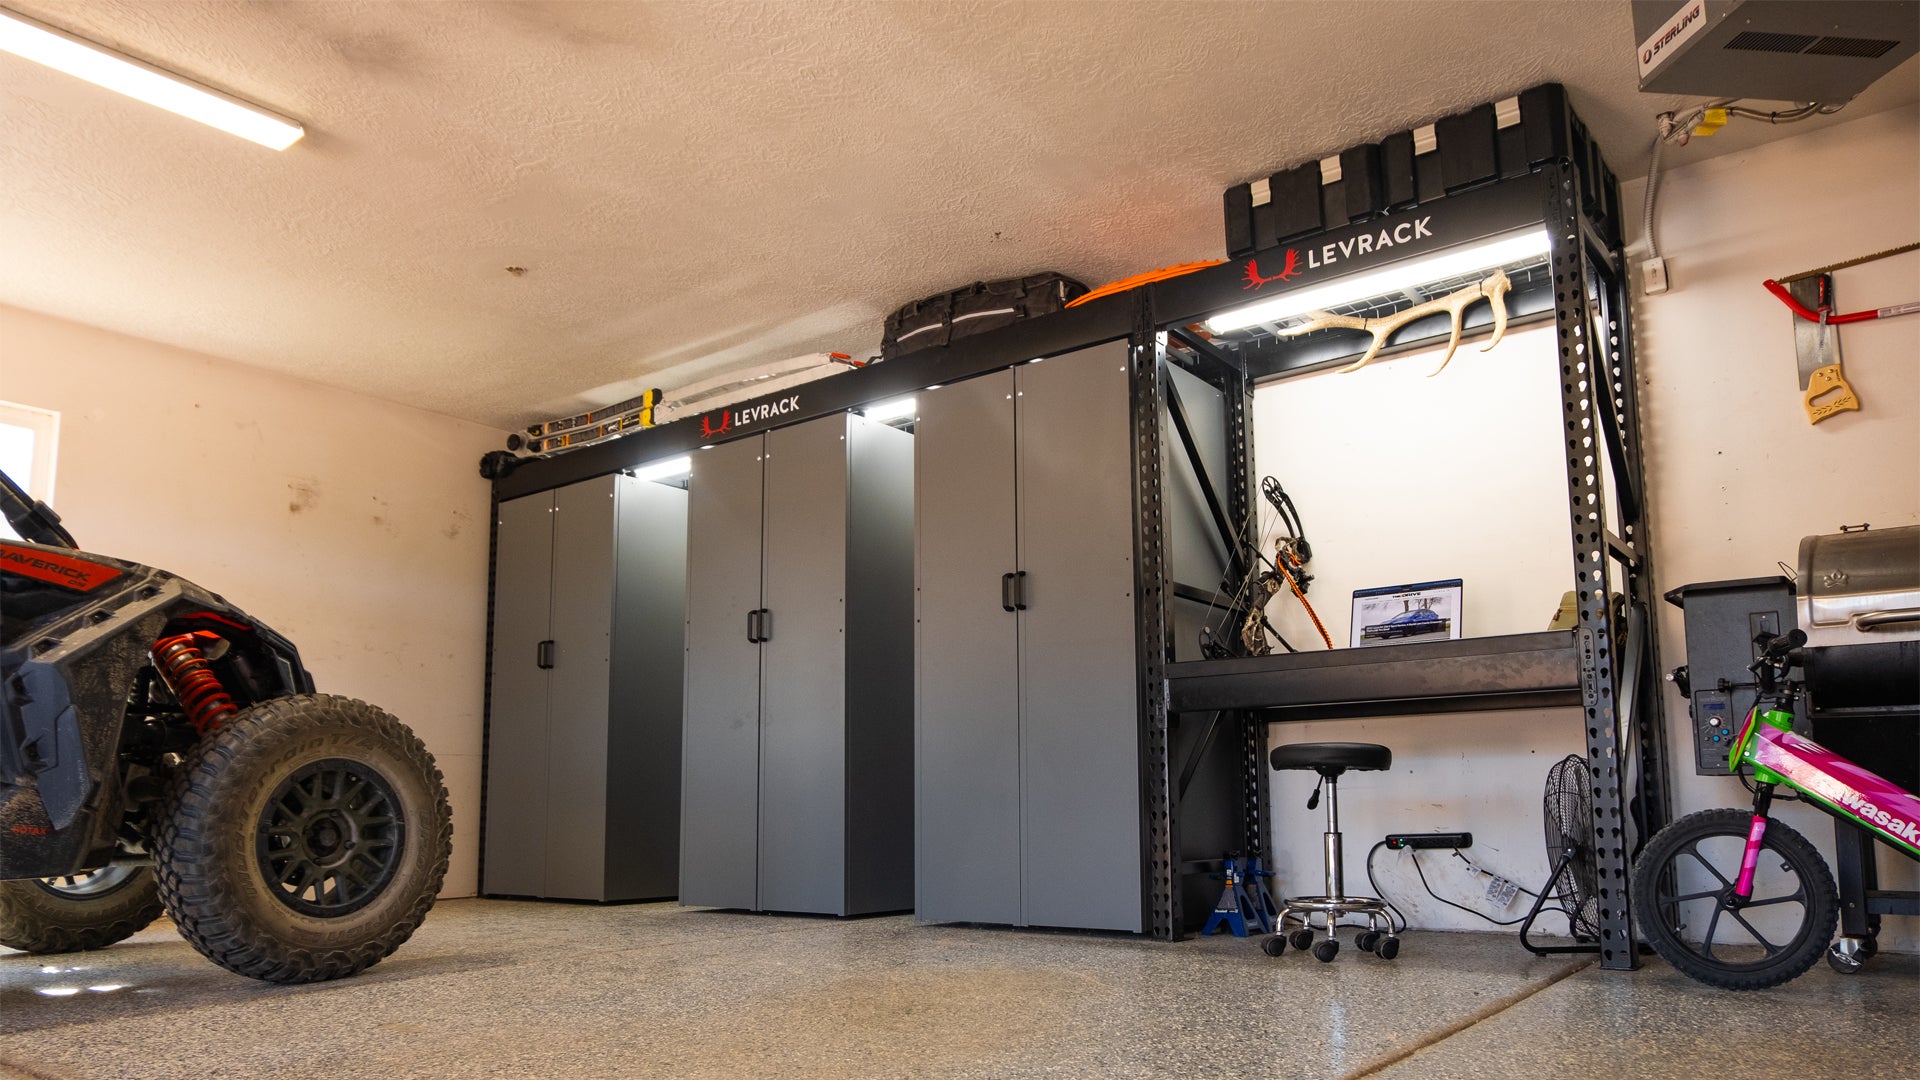 The Best Garage Storage Systems Of 2023